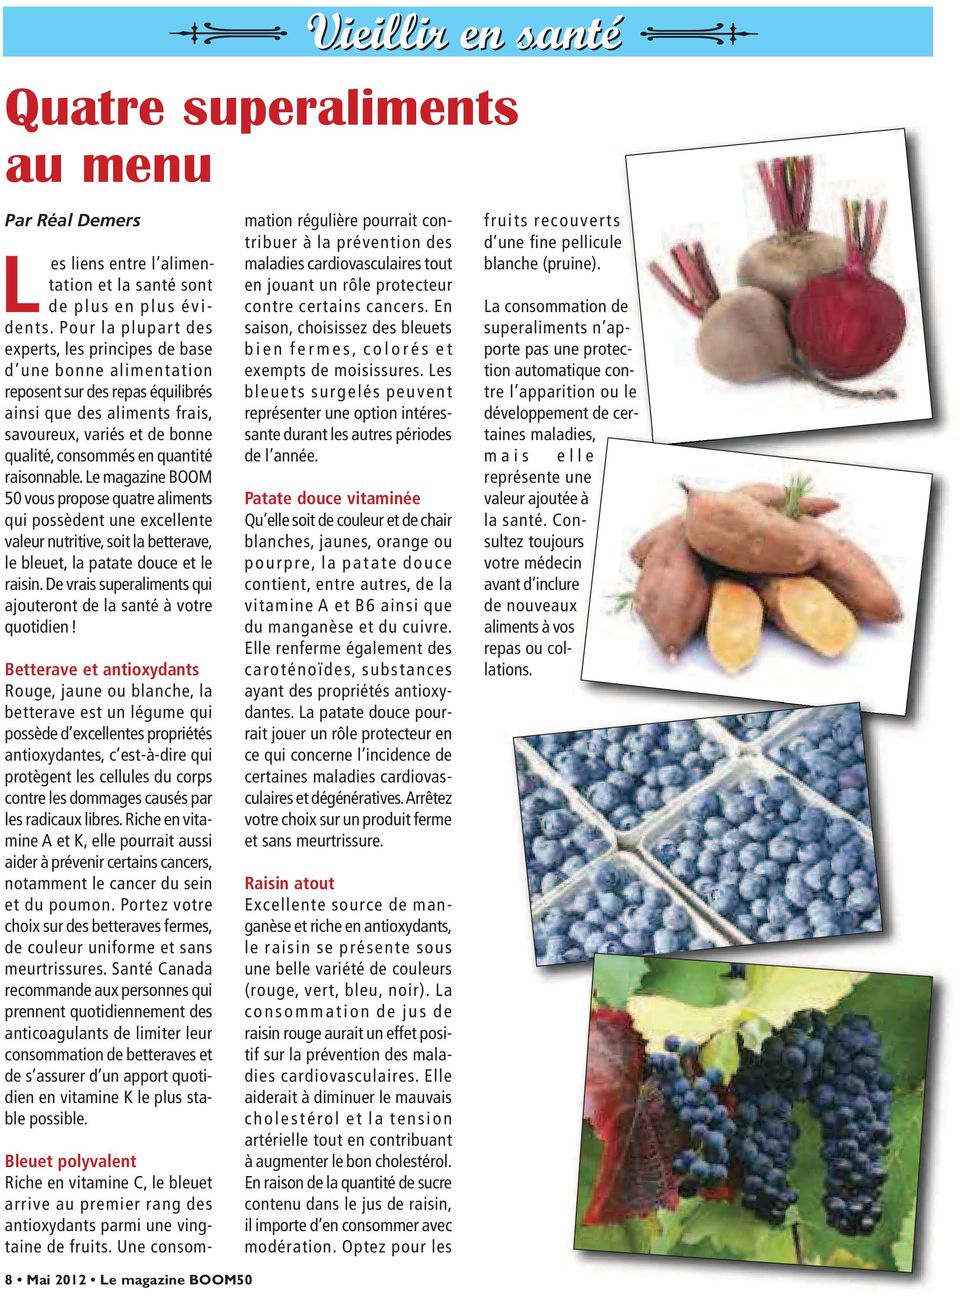 quantité raisonnable. Le magazine BOOM 50 vous propose quatre aliments qui possèdent une excellente valeur nutritive, soit la bette rave, le bleuet, la patate douce et le raisin.